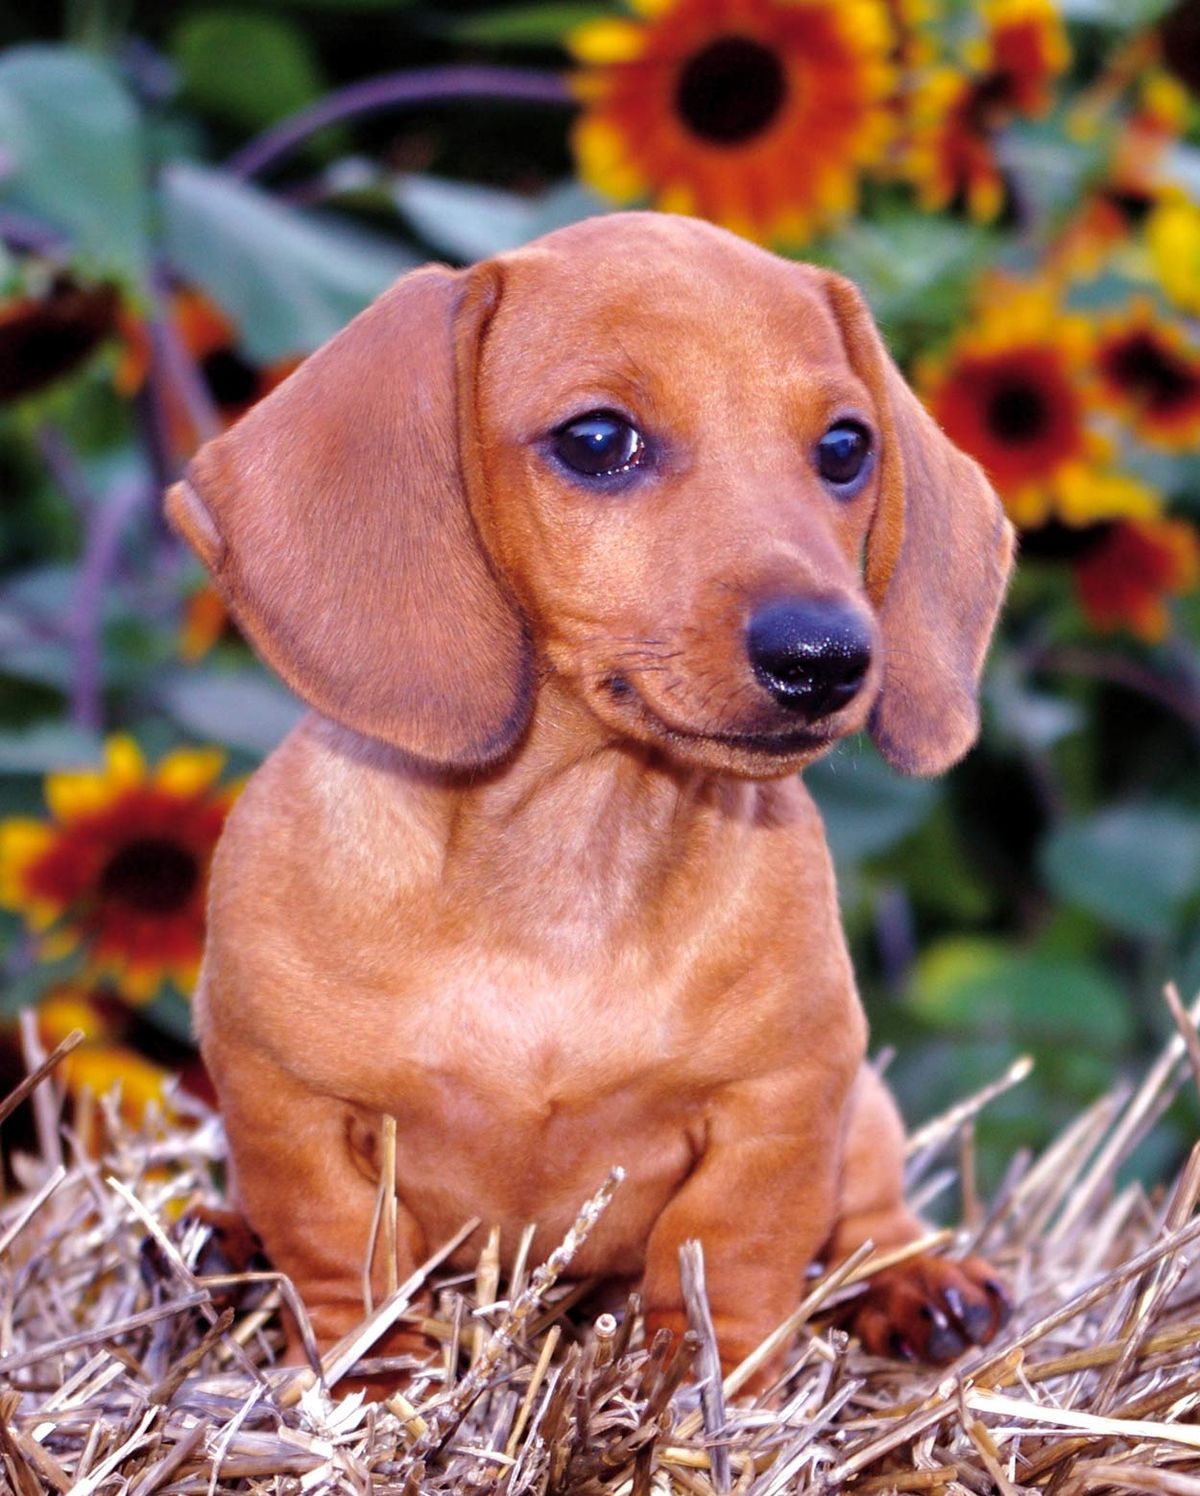 Perros con orejas largas: las adorables mascotas con orejas que le encantarán a su familia